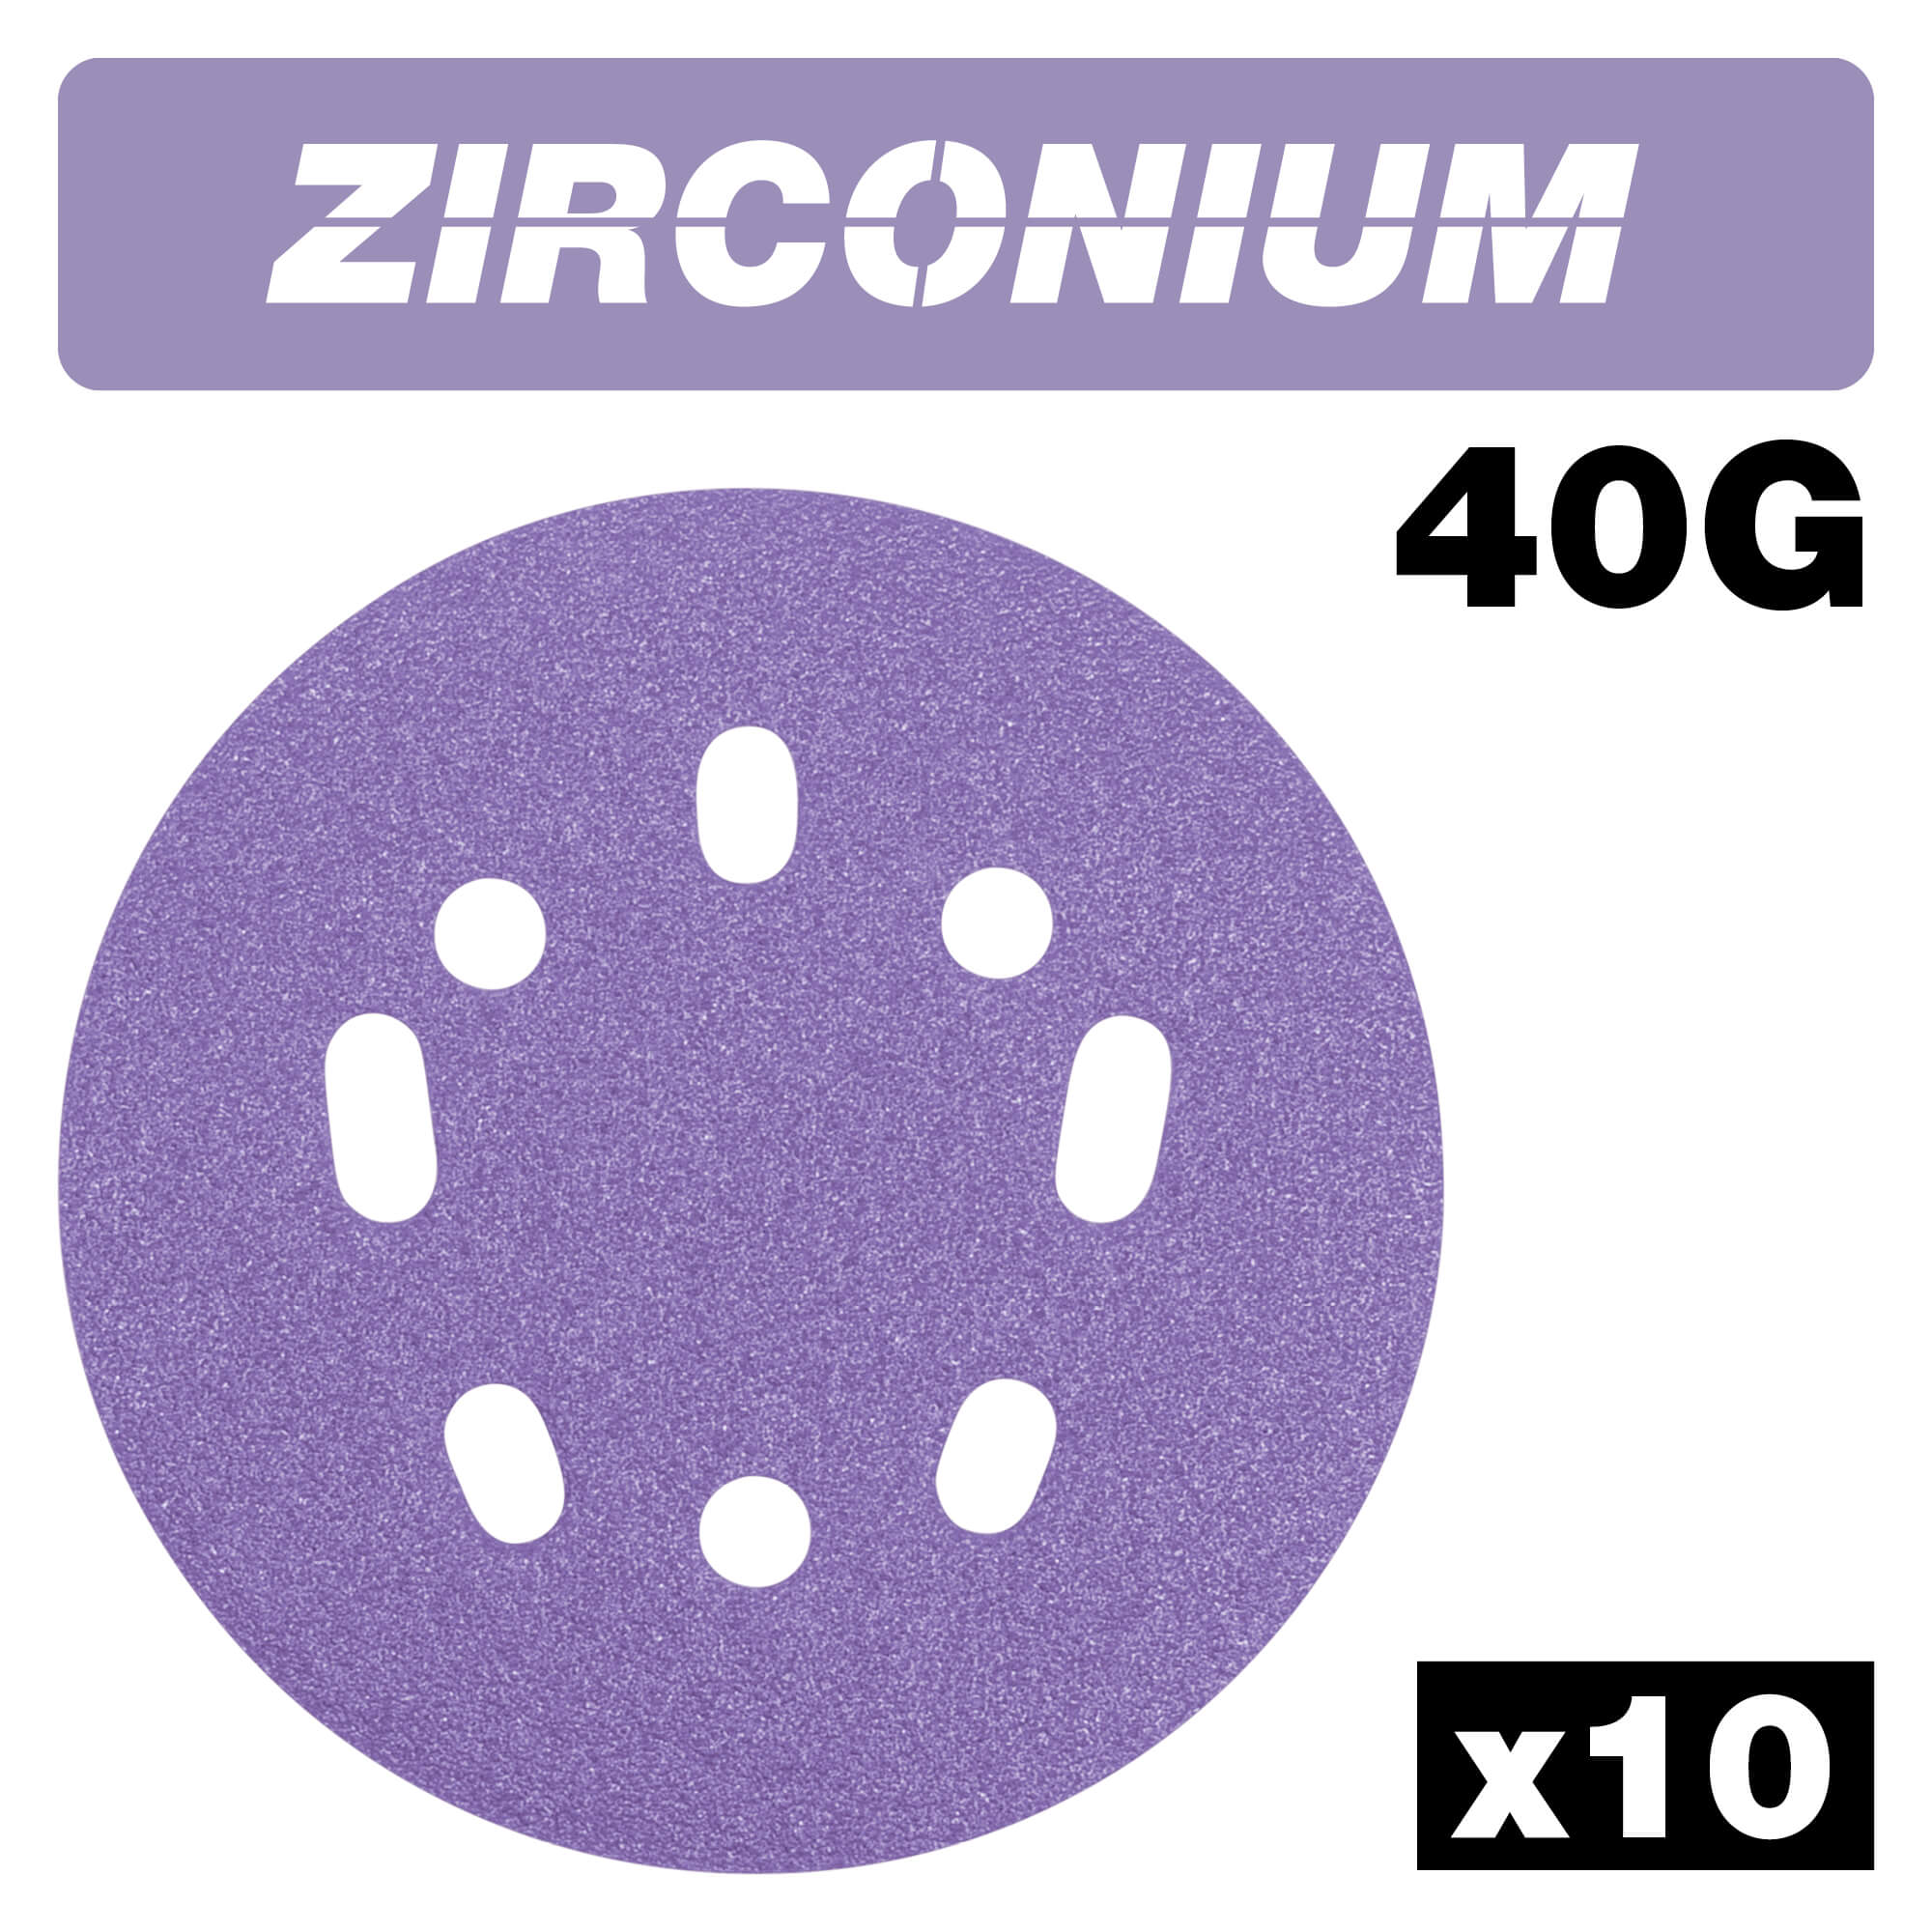 Photo of Trend Zirconium Random Orbital Sanding Disc 125mm 125mm 40g Pack Of 10